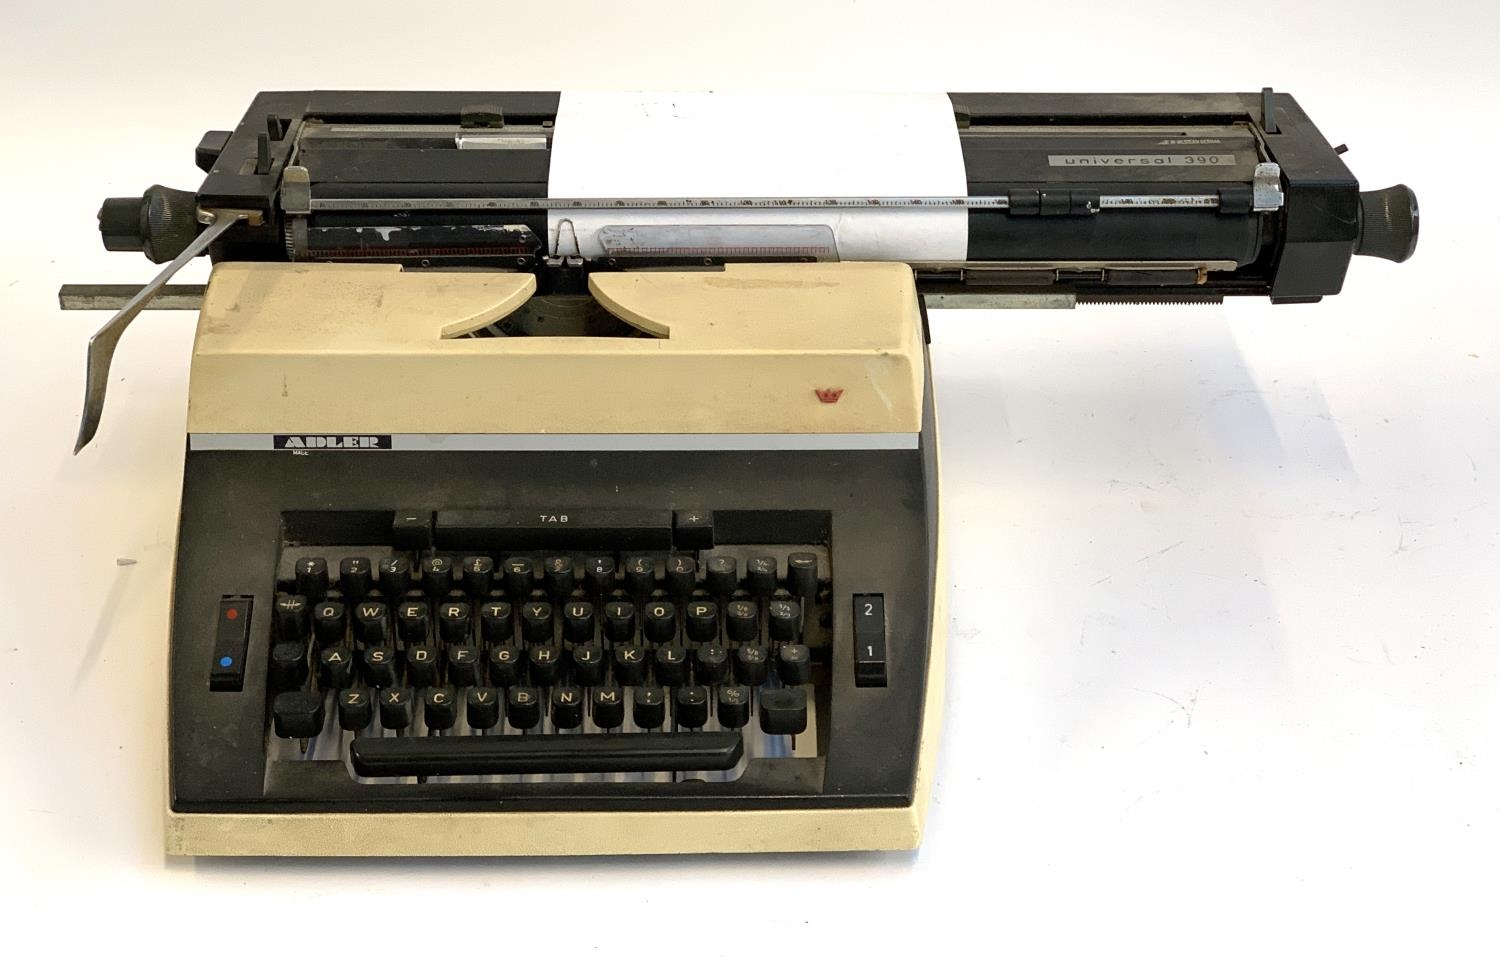 An Adler Universal 390 typewriter